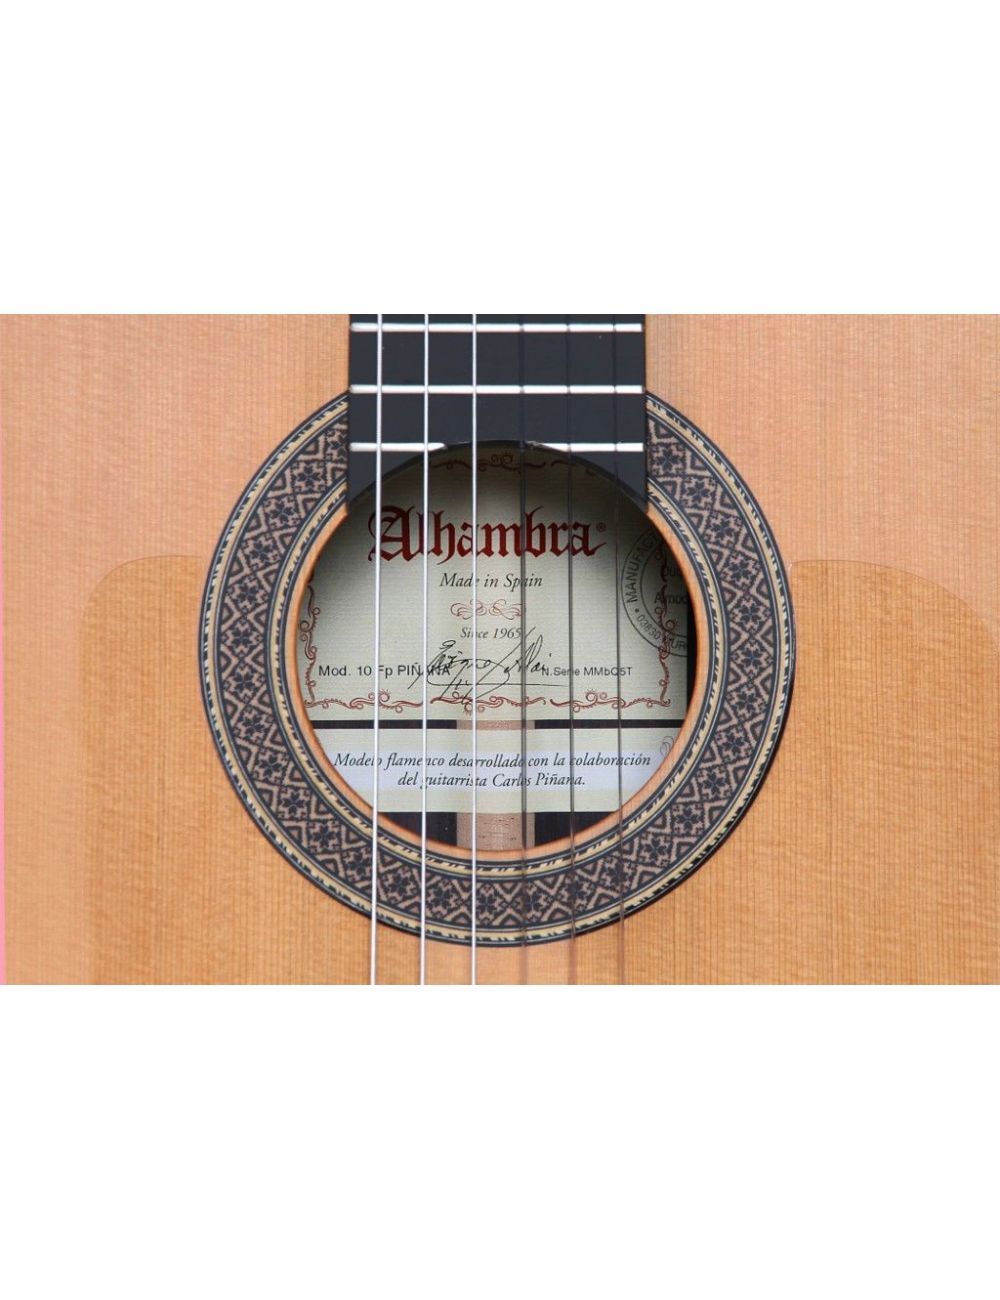 Alhambra 10FP PINANA flamenco negra guitar 8225 Premium Flamenco